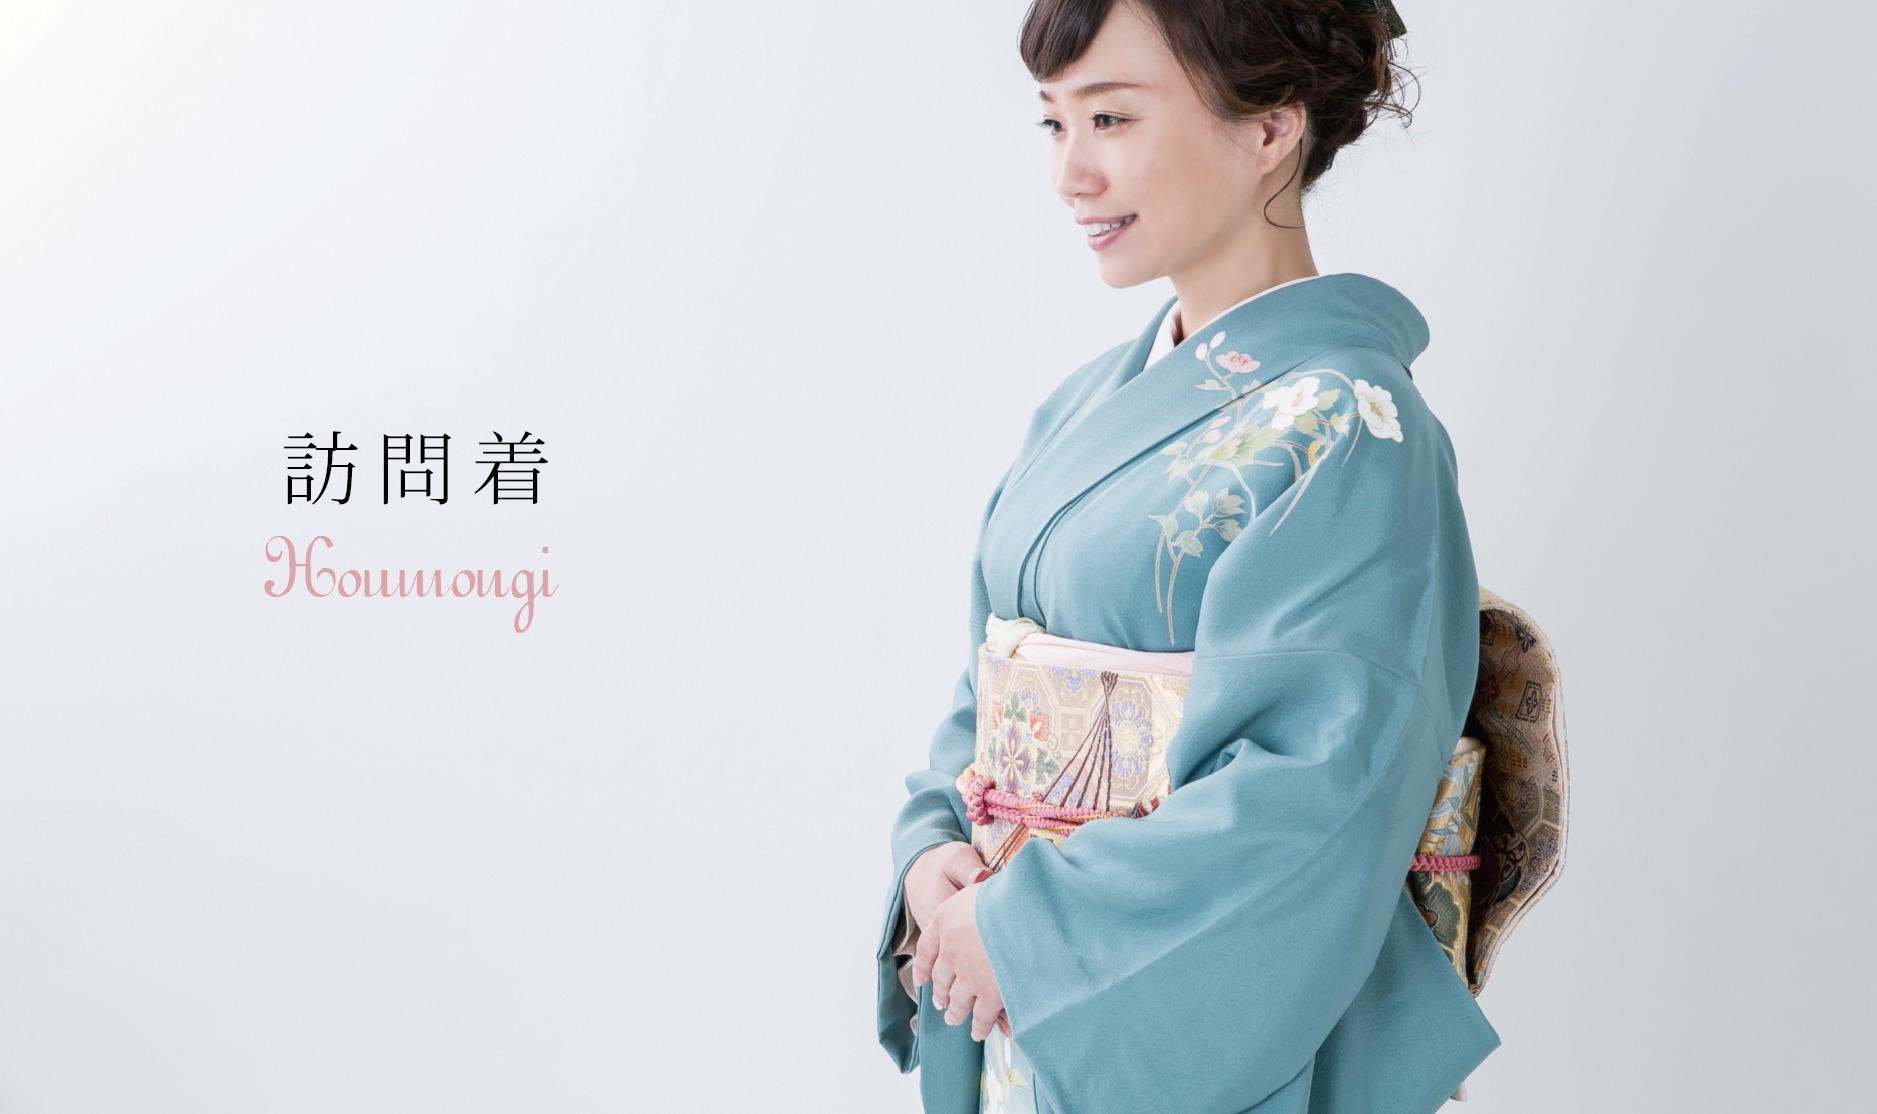 長崎の結婚式
親族衣裳レンタル
和装
神社挙式
挙式
人前式
留袖レンタル
訪問着レンタル